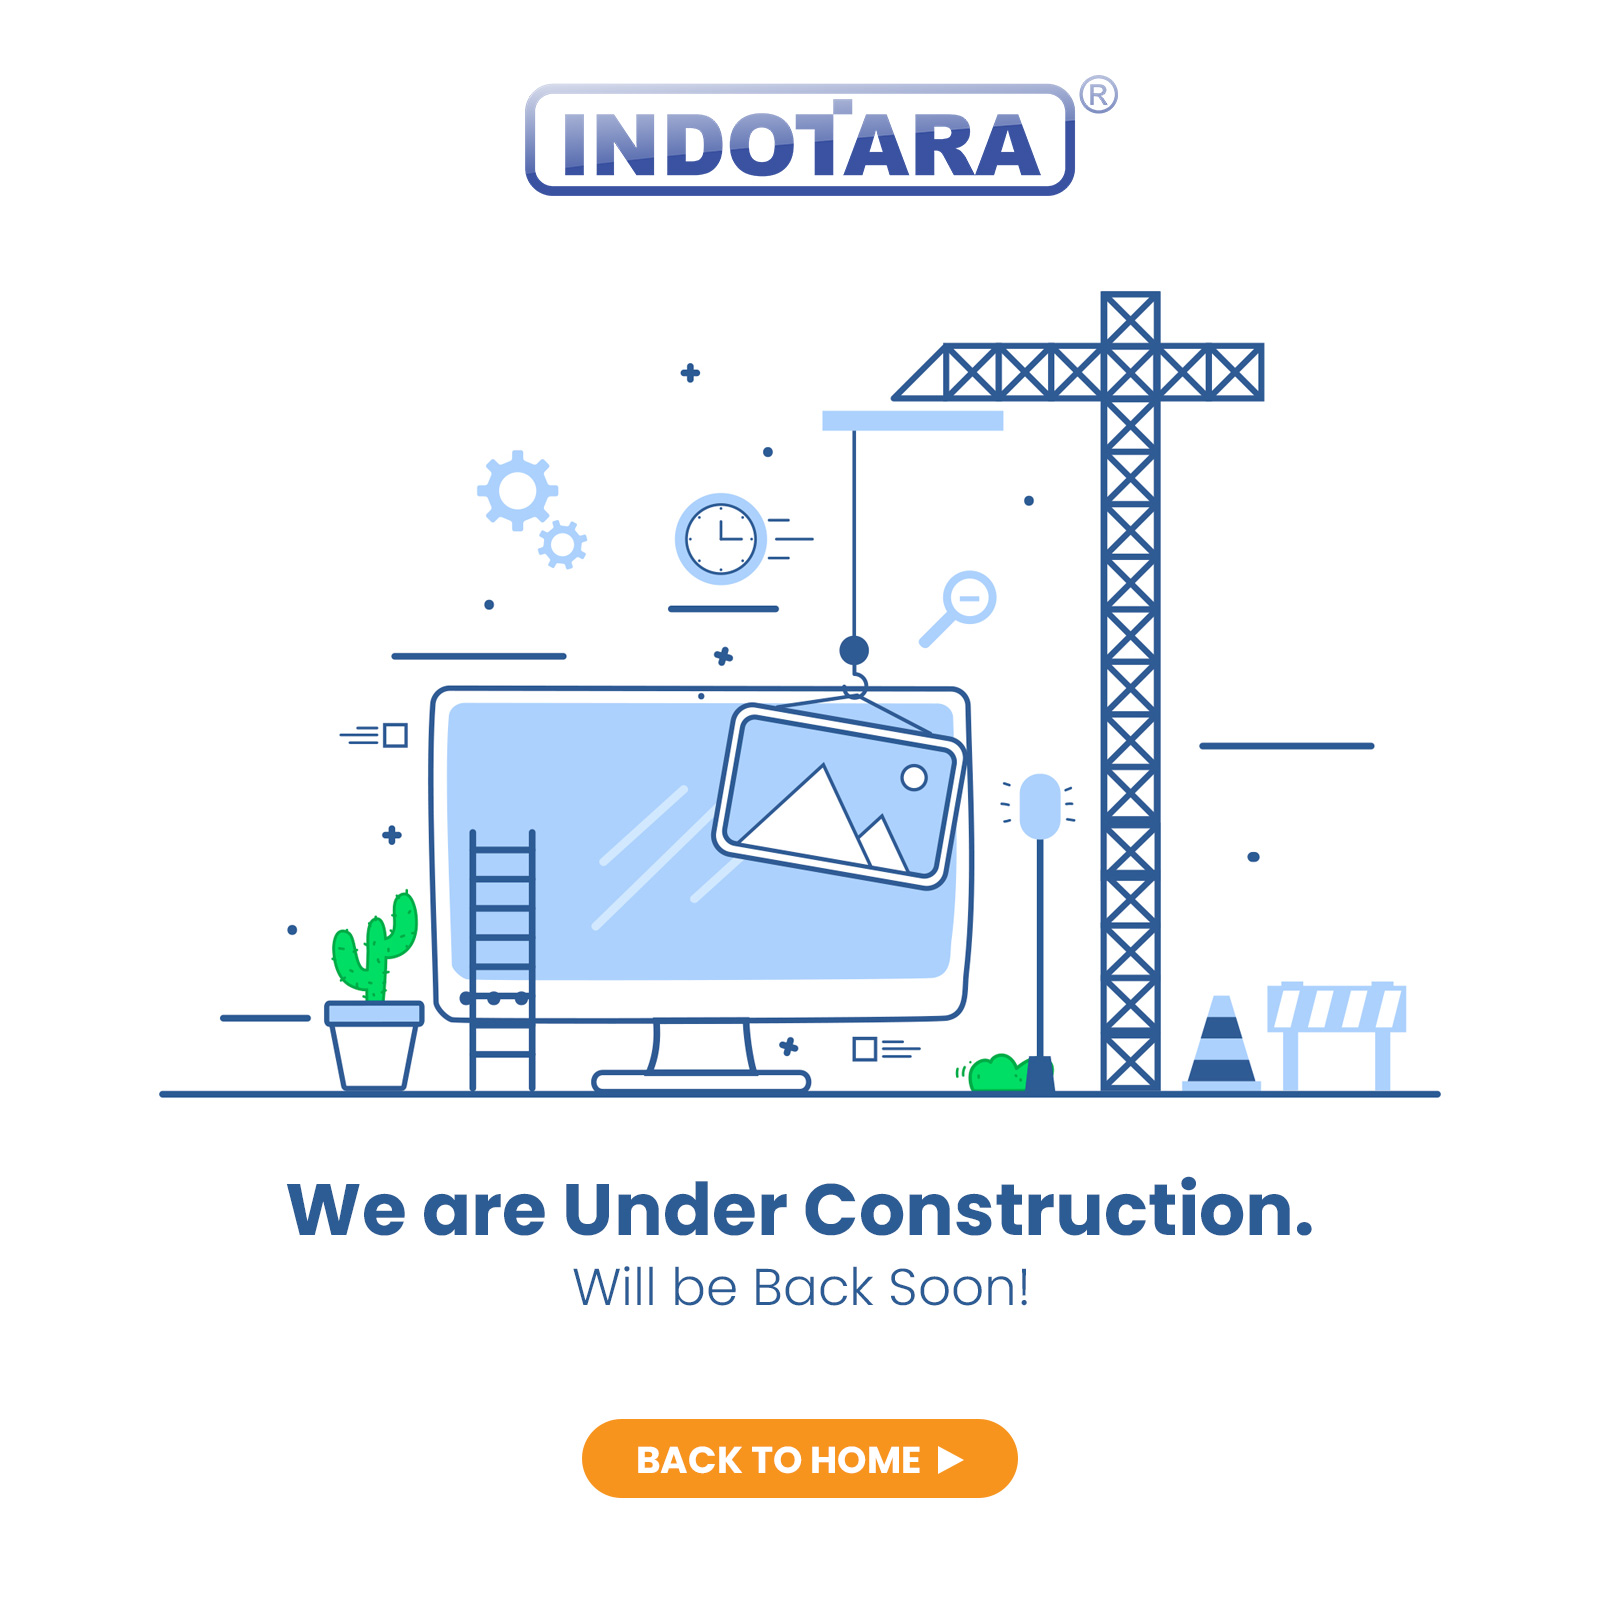 Indotara Website Under Construction